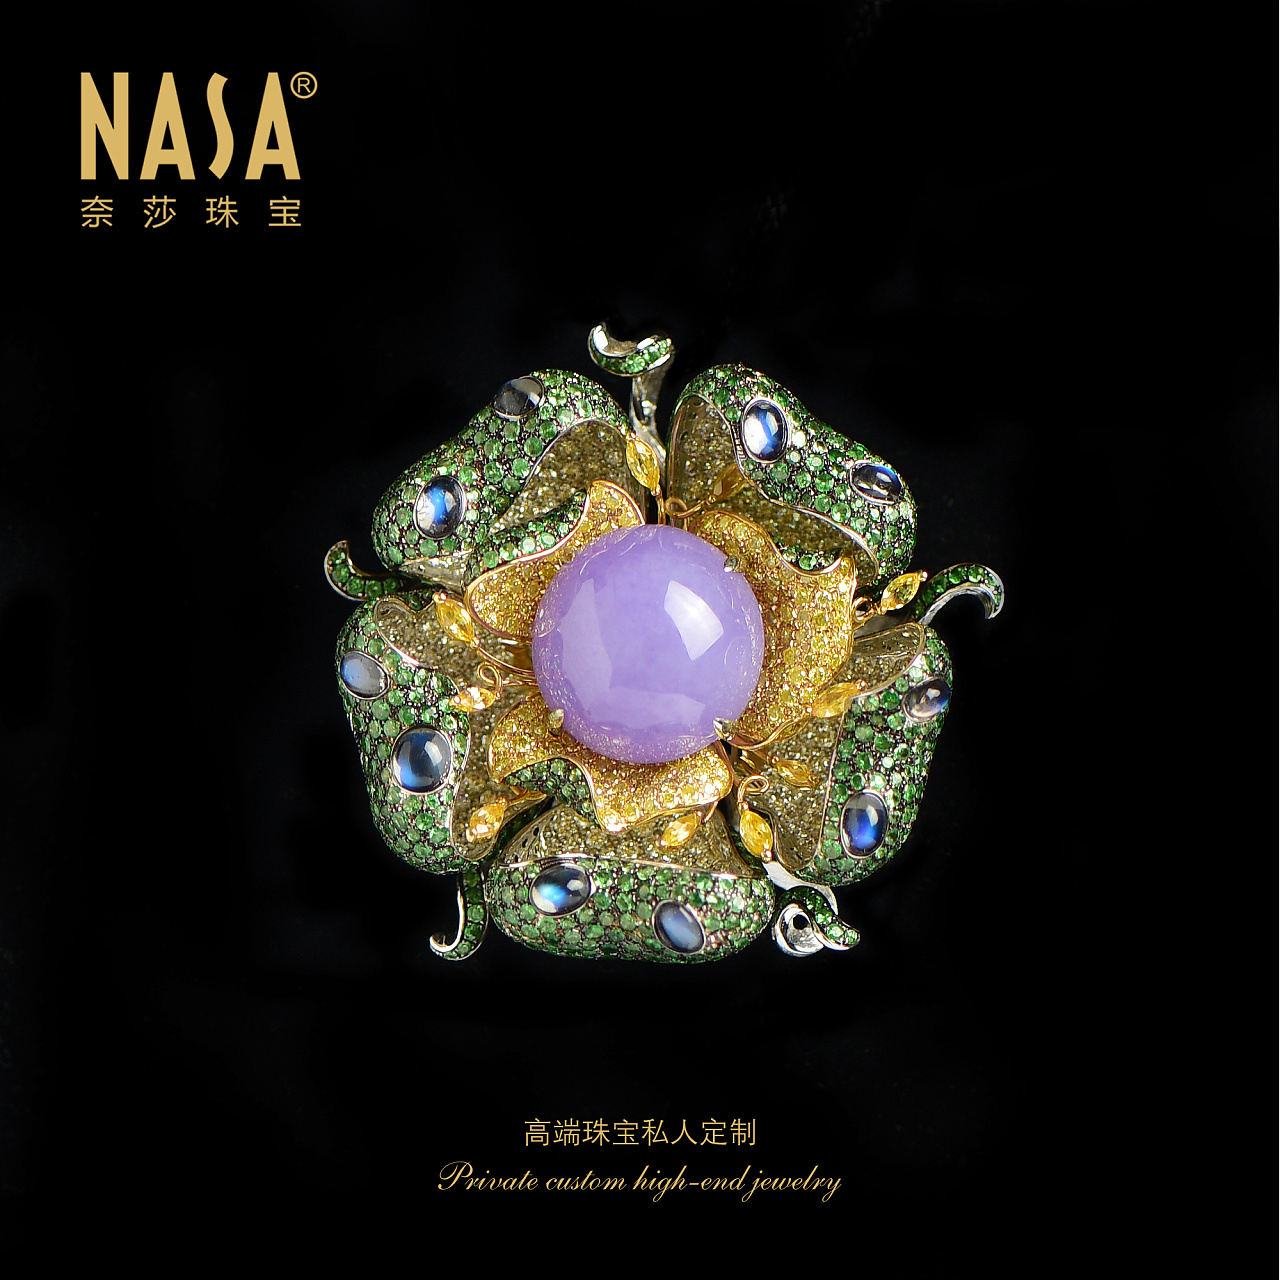 奈莎NASA珠宝高端珠宝私人定制原创设计东方